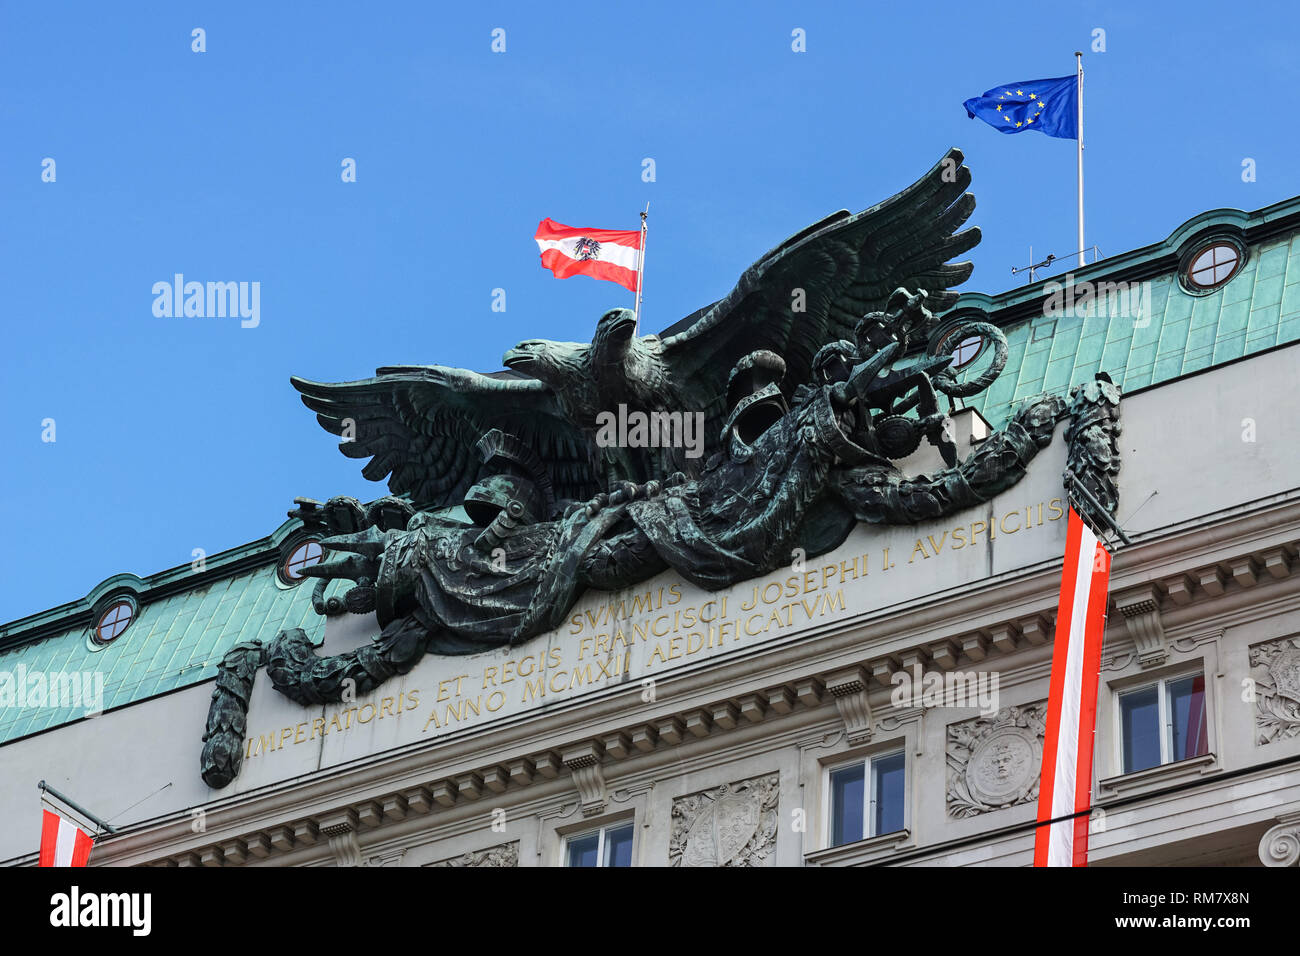 La doppia aquila ( lo stemma di Austria-ungheria ) del palazzo del governo di Vienna in Austria Foto Stock